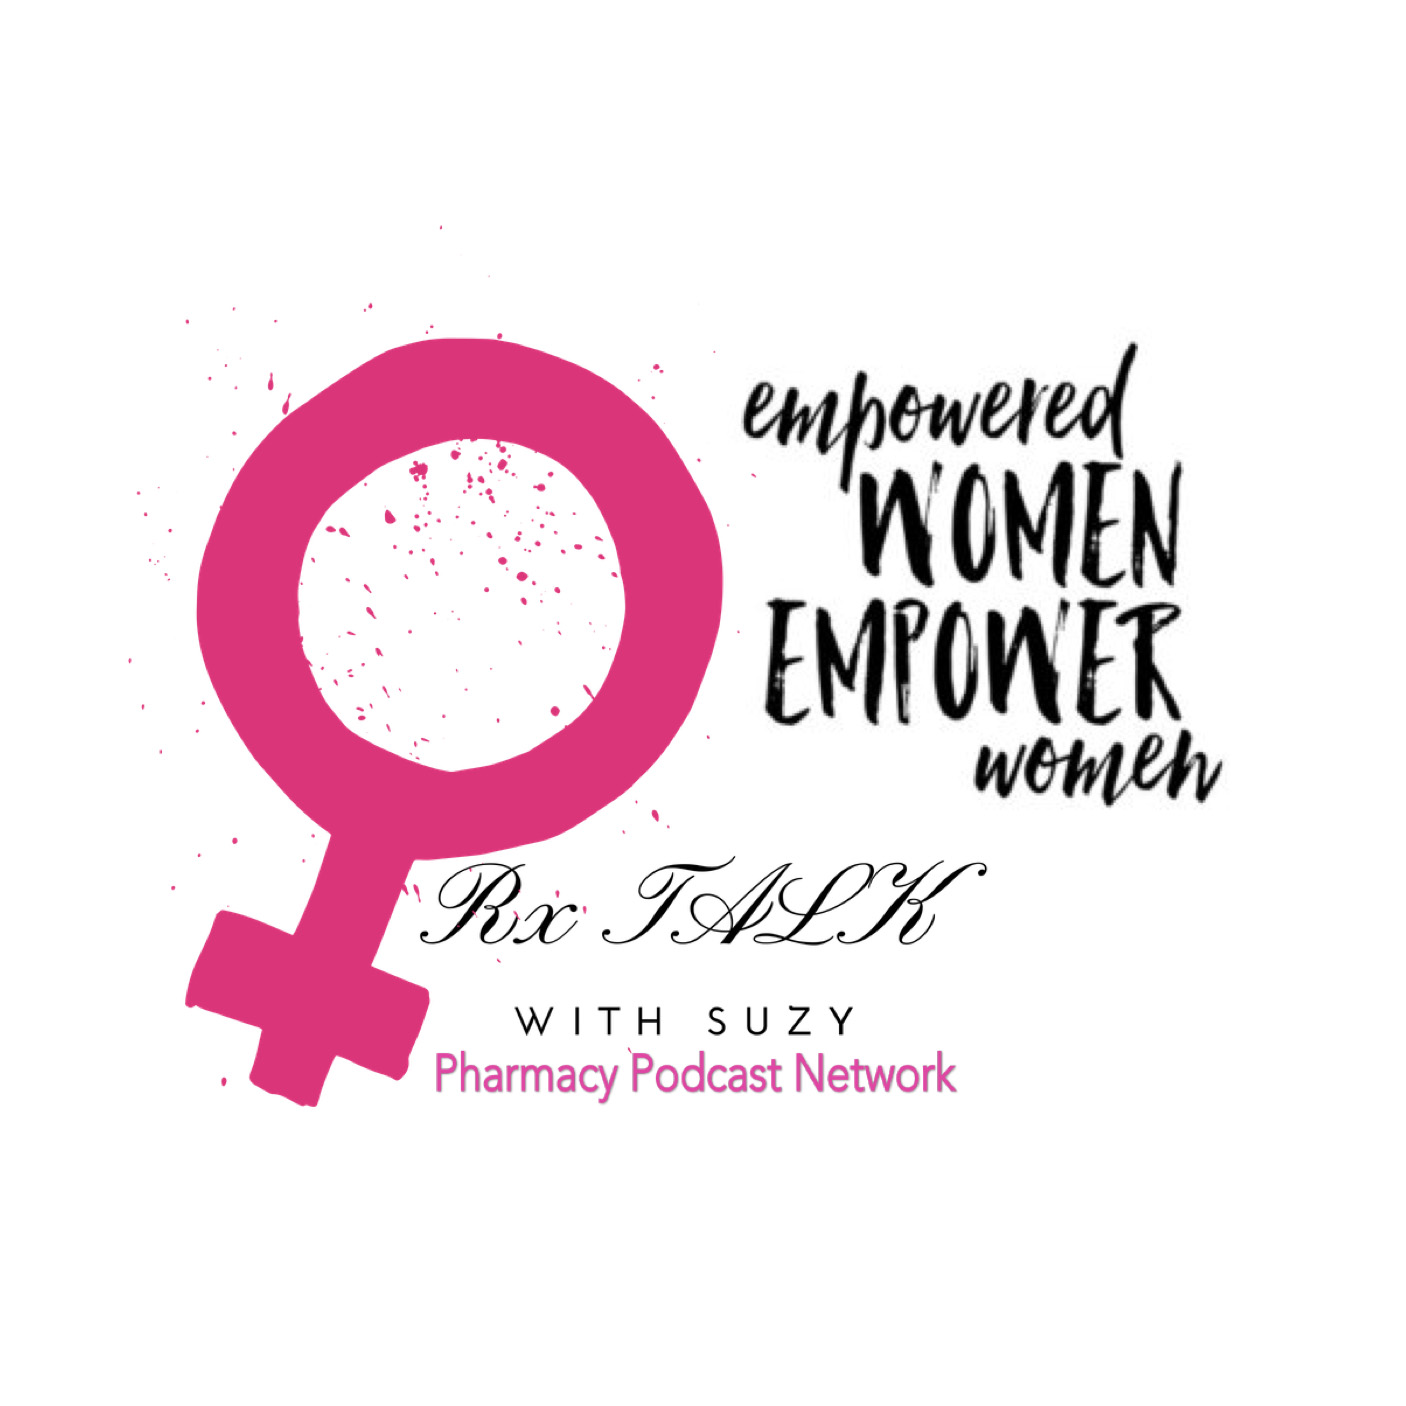 Women Empowering Women in Pharmacy - Rx Talk w/ Suzy - PPN Episode 882